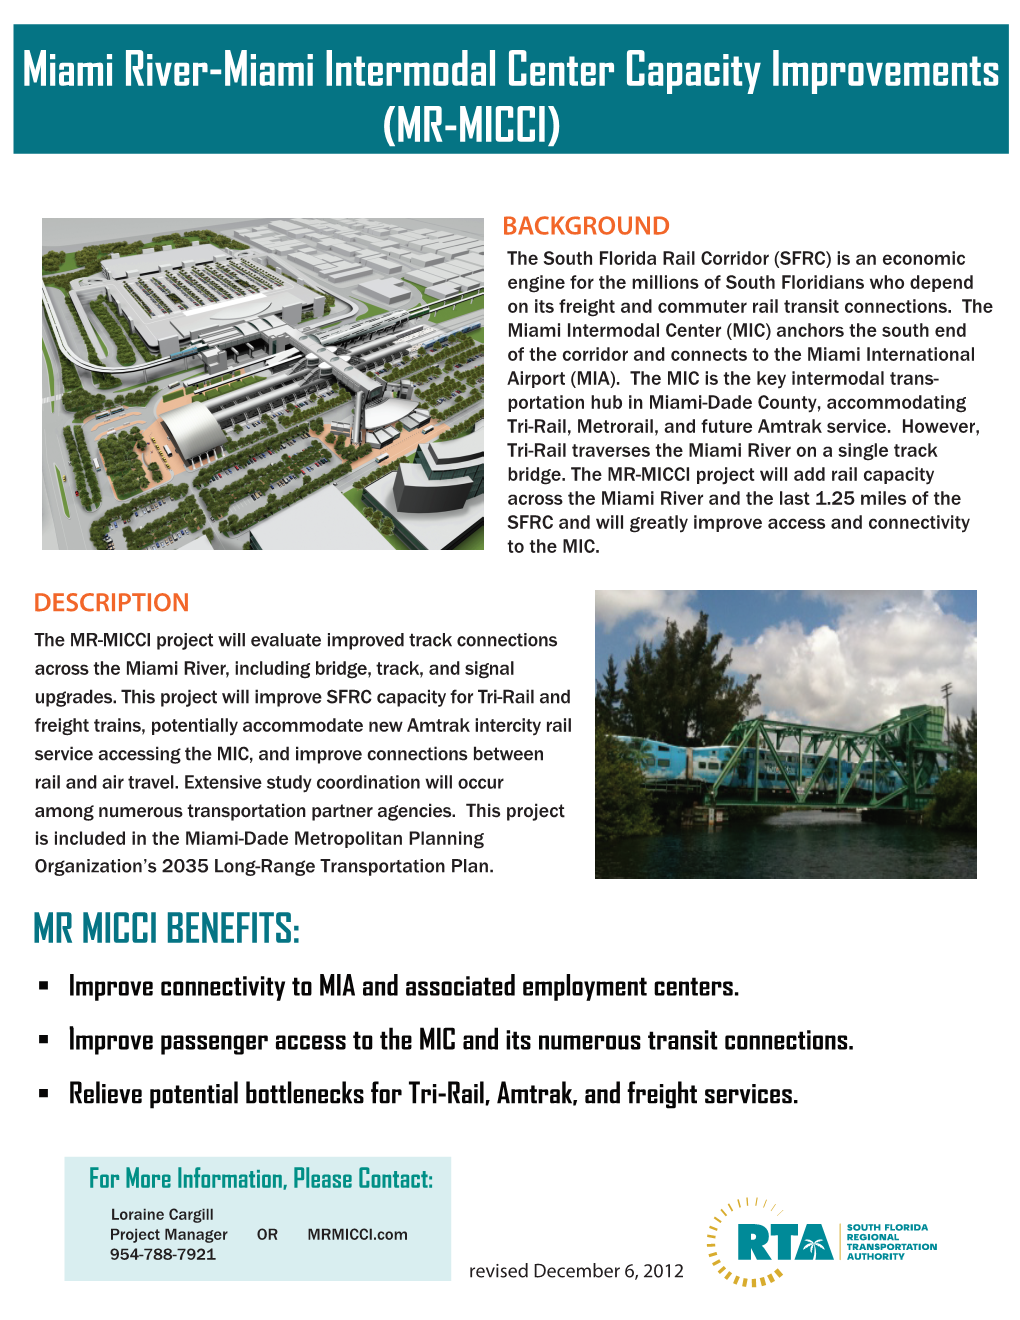 Miami River-Miami Intermodal Center Capacity Improvements (MR-MICCI)